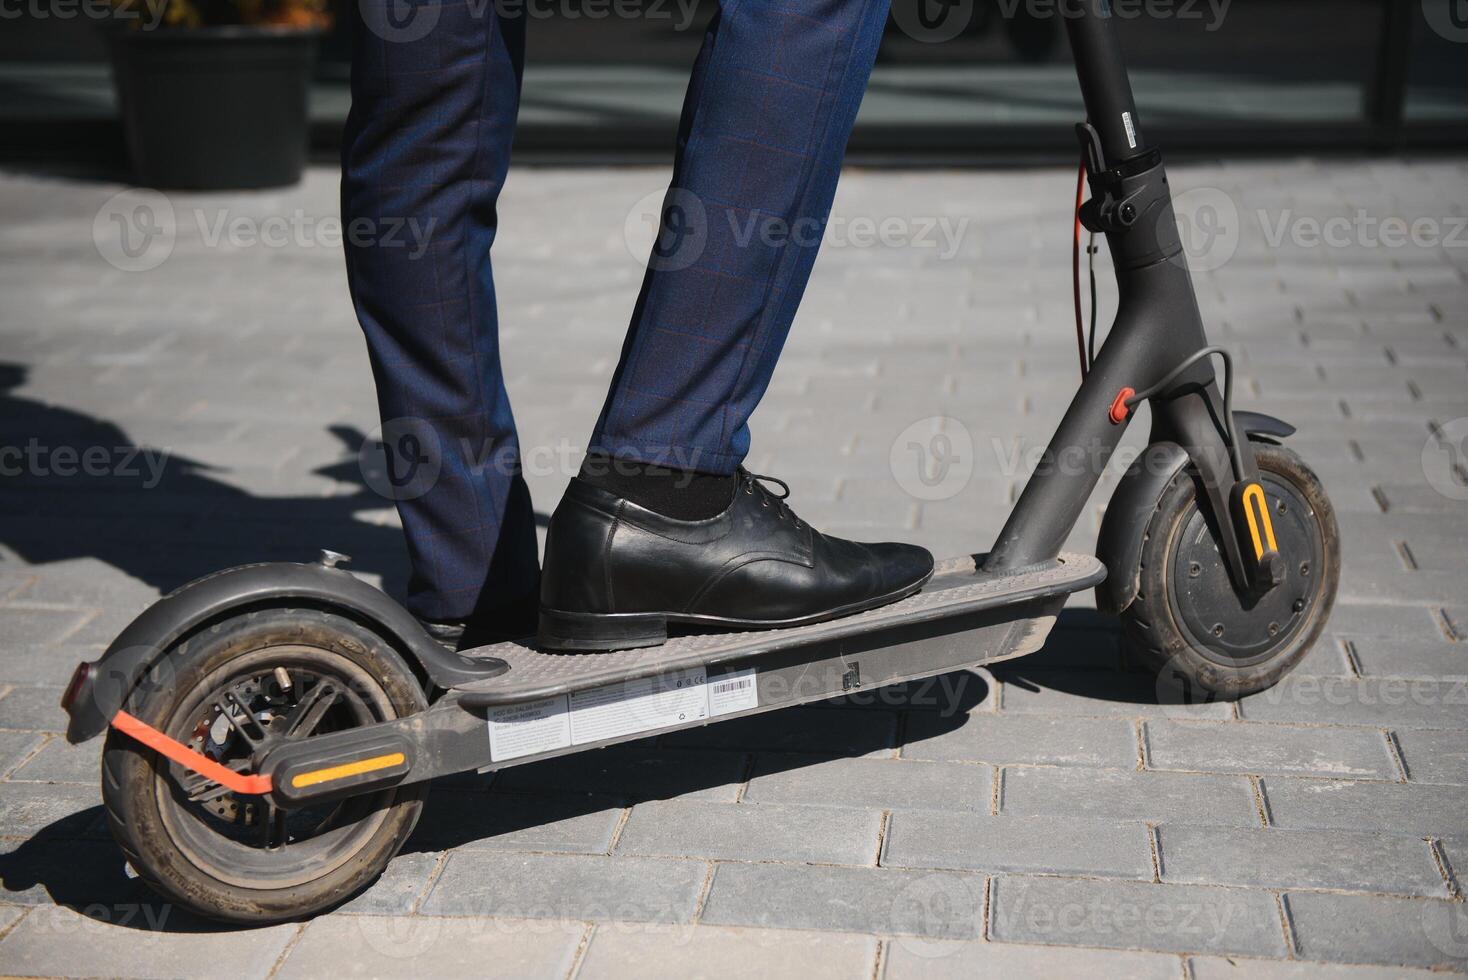 jong Afrikaanse zakenman rijden een elektrisch scooter foto